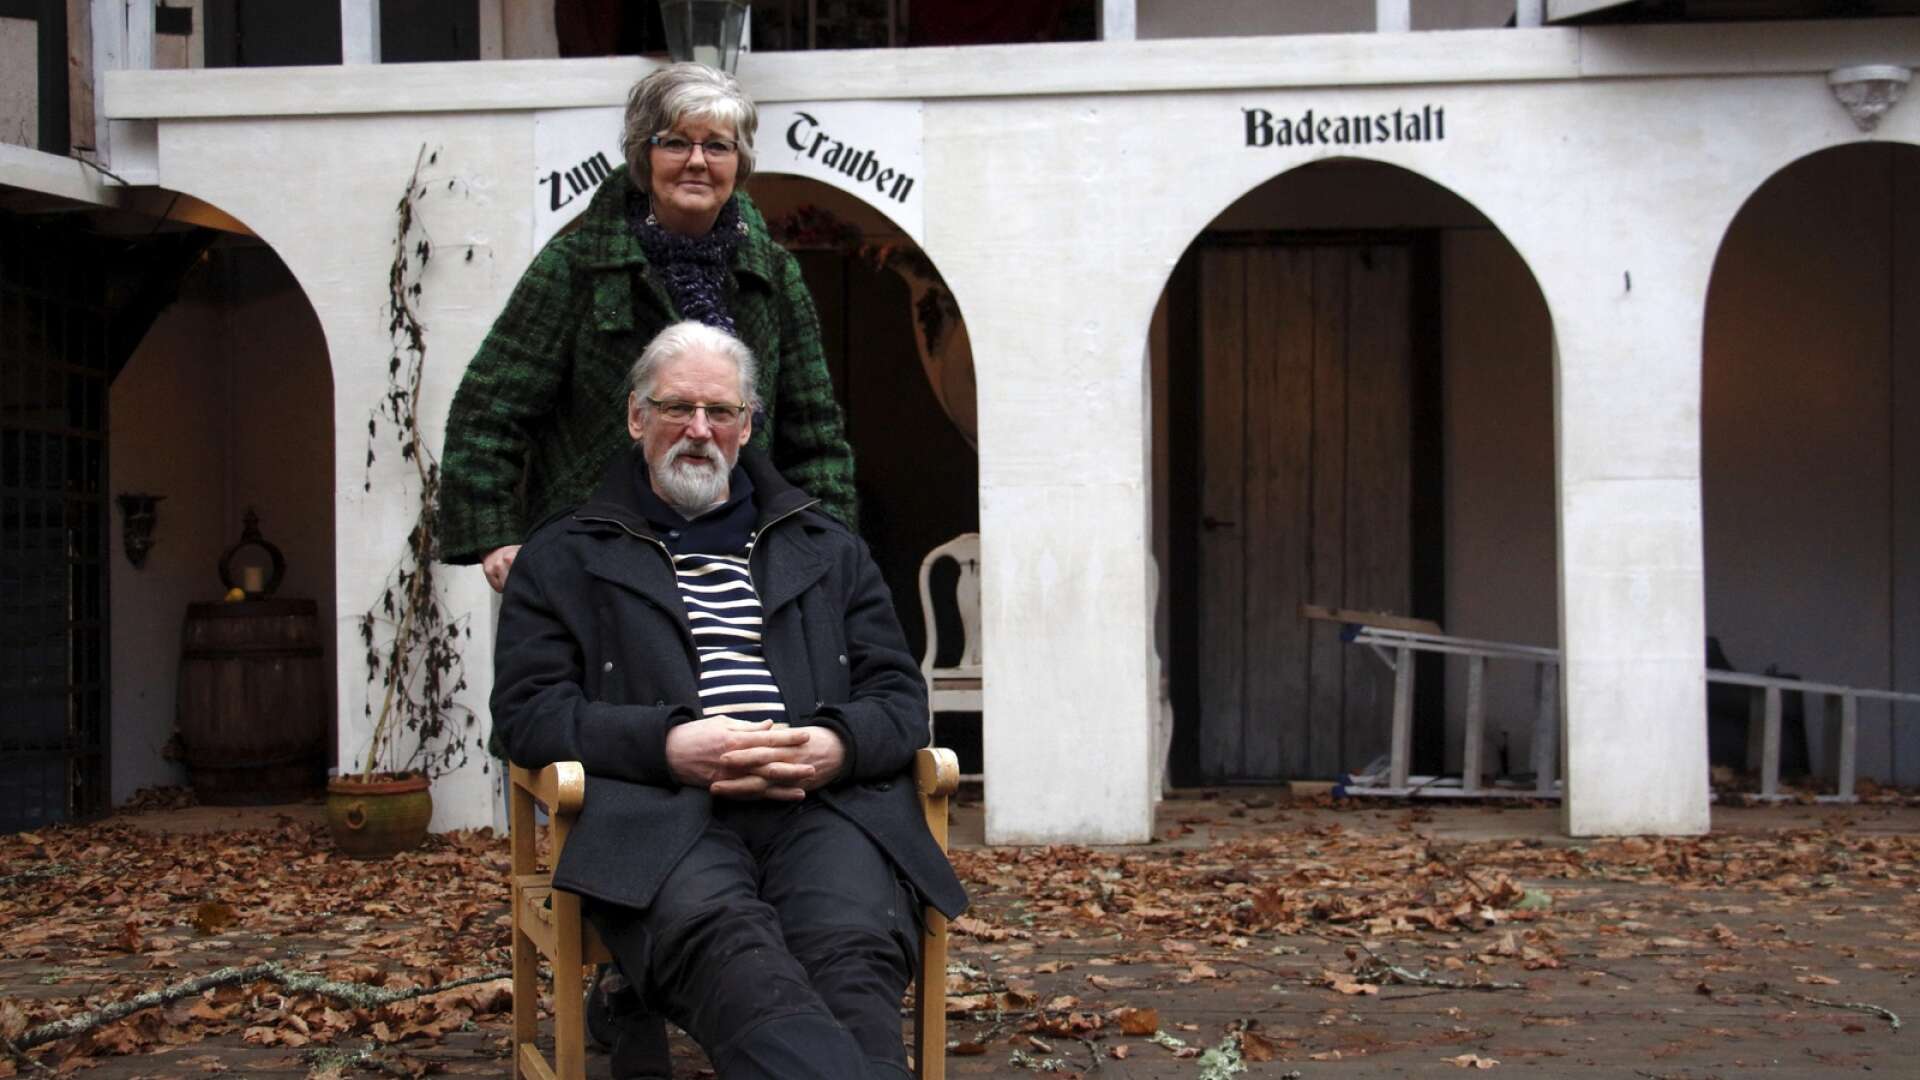 Olle och Lena Söderberg driver teater Nolby, en av de platser Tina Ruth besökte på sin resa genom länet.